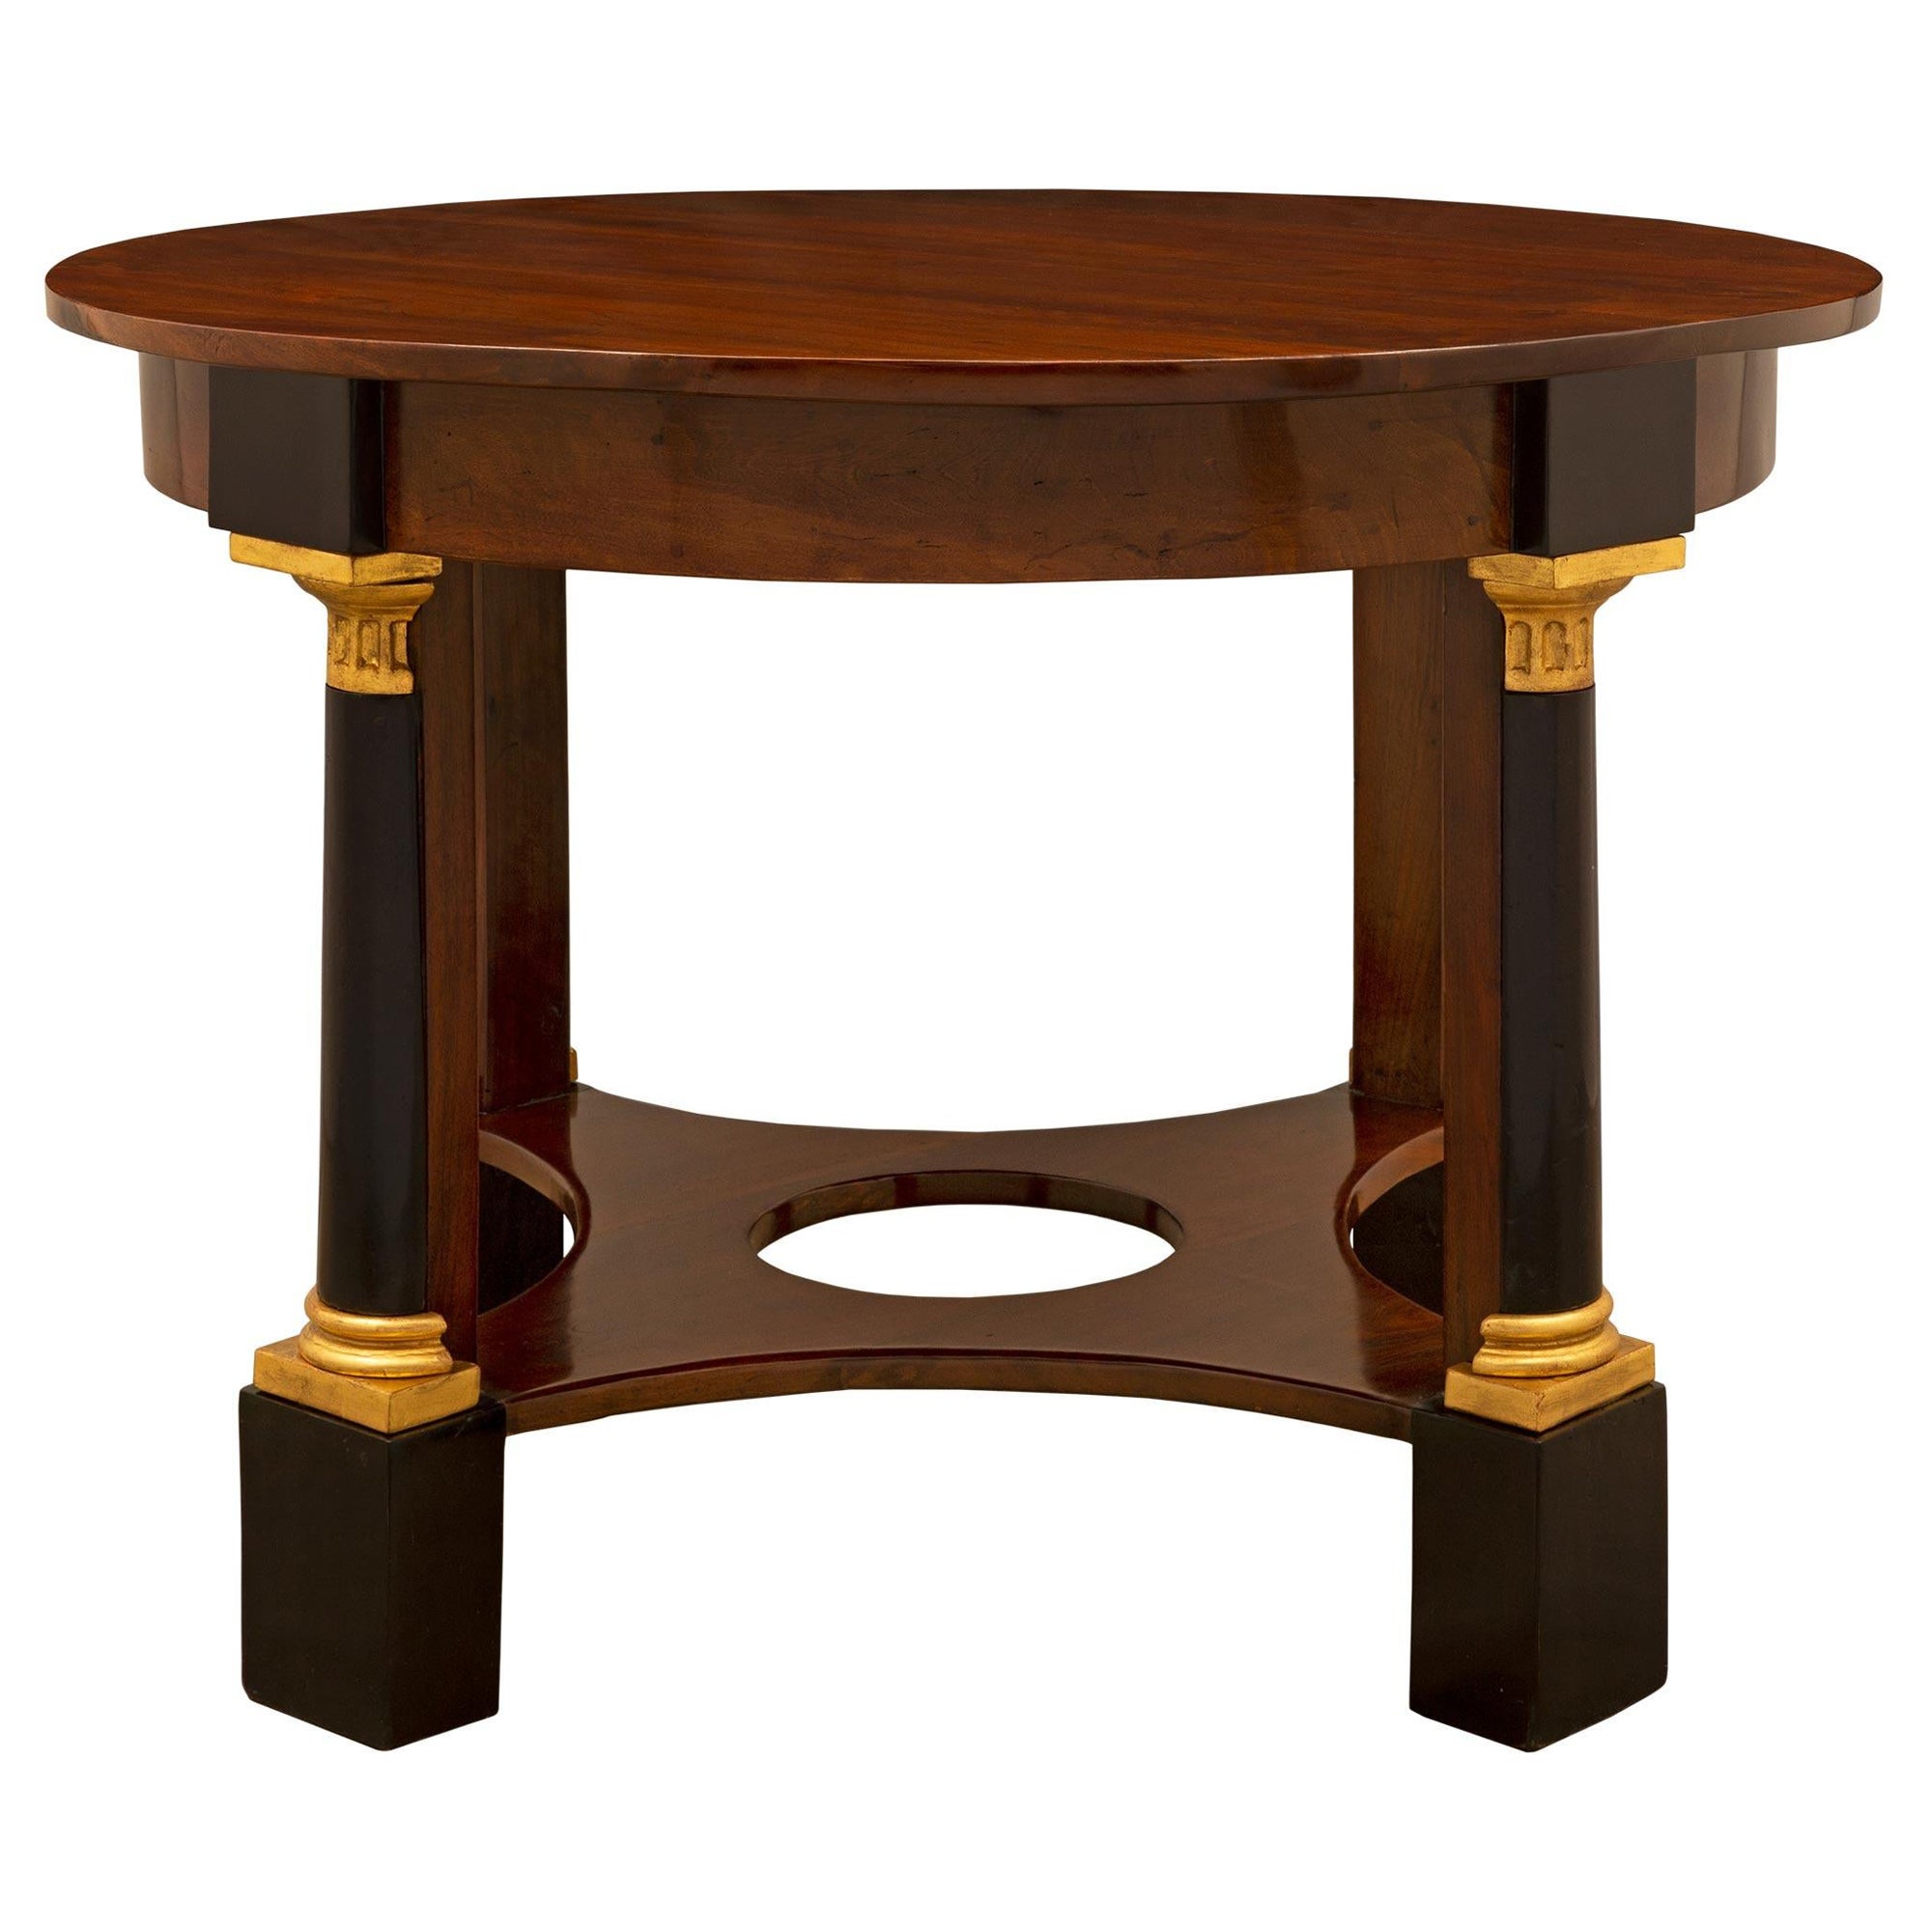 Table centrale italienne néoclassique du XIXe siècle en acajou et bois fruitier de style néoclassique